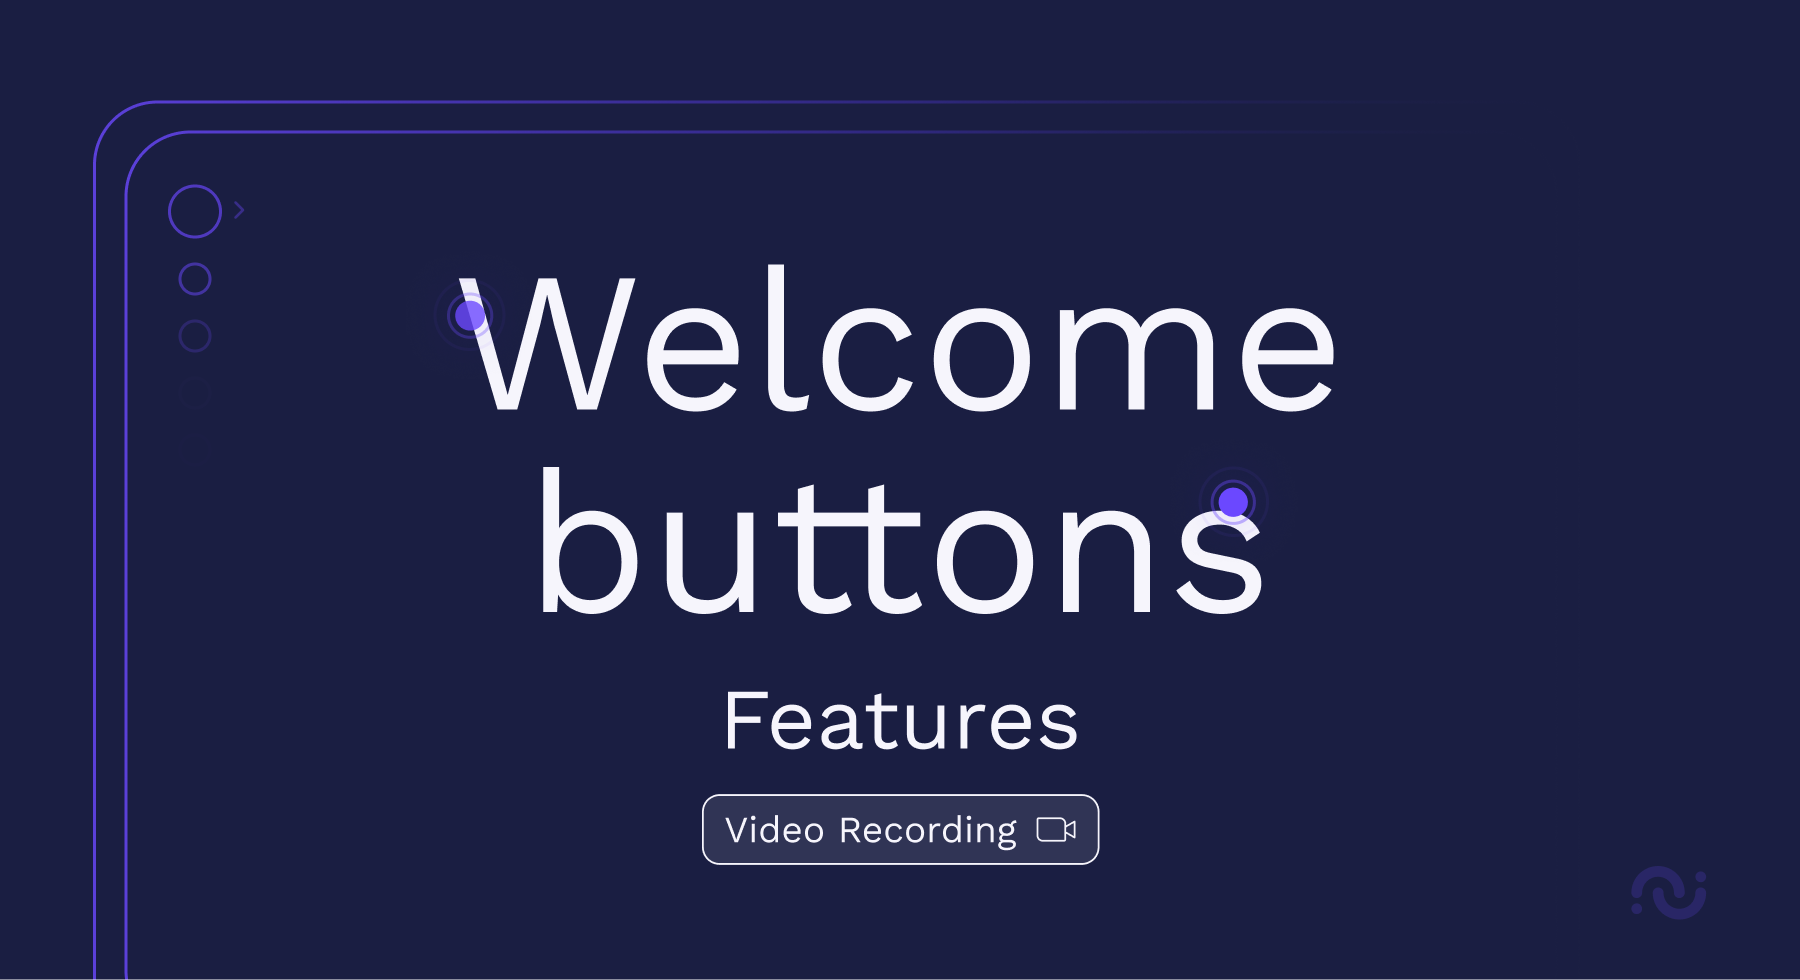 Les boutons de bienvenue